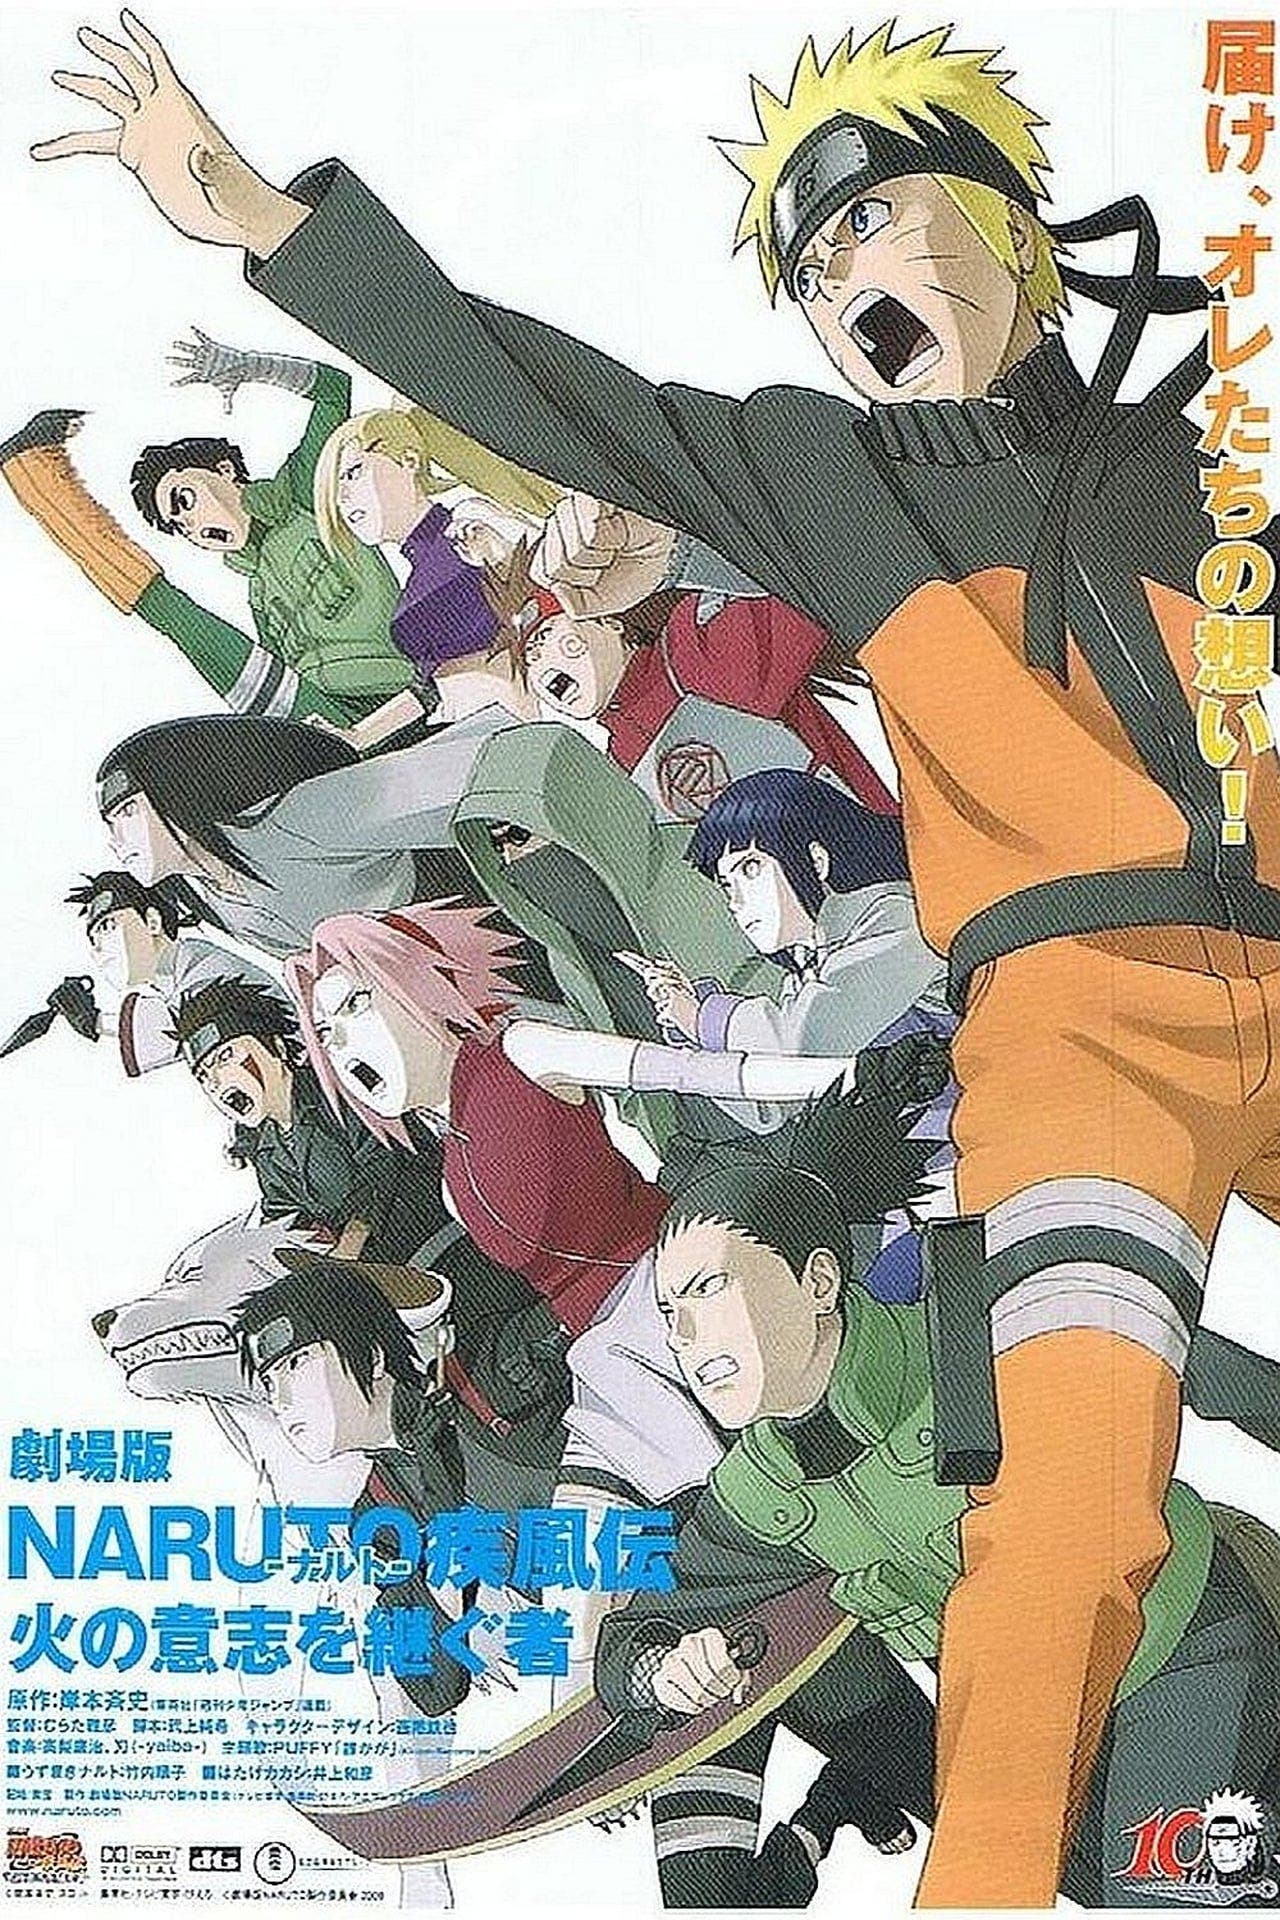 Episodios Naruto Shippuden - Relleno y Orden Cronológico - Anime